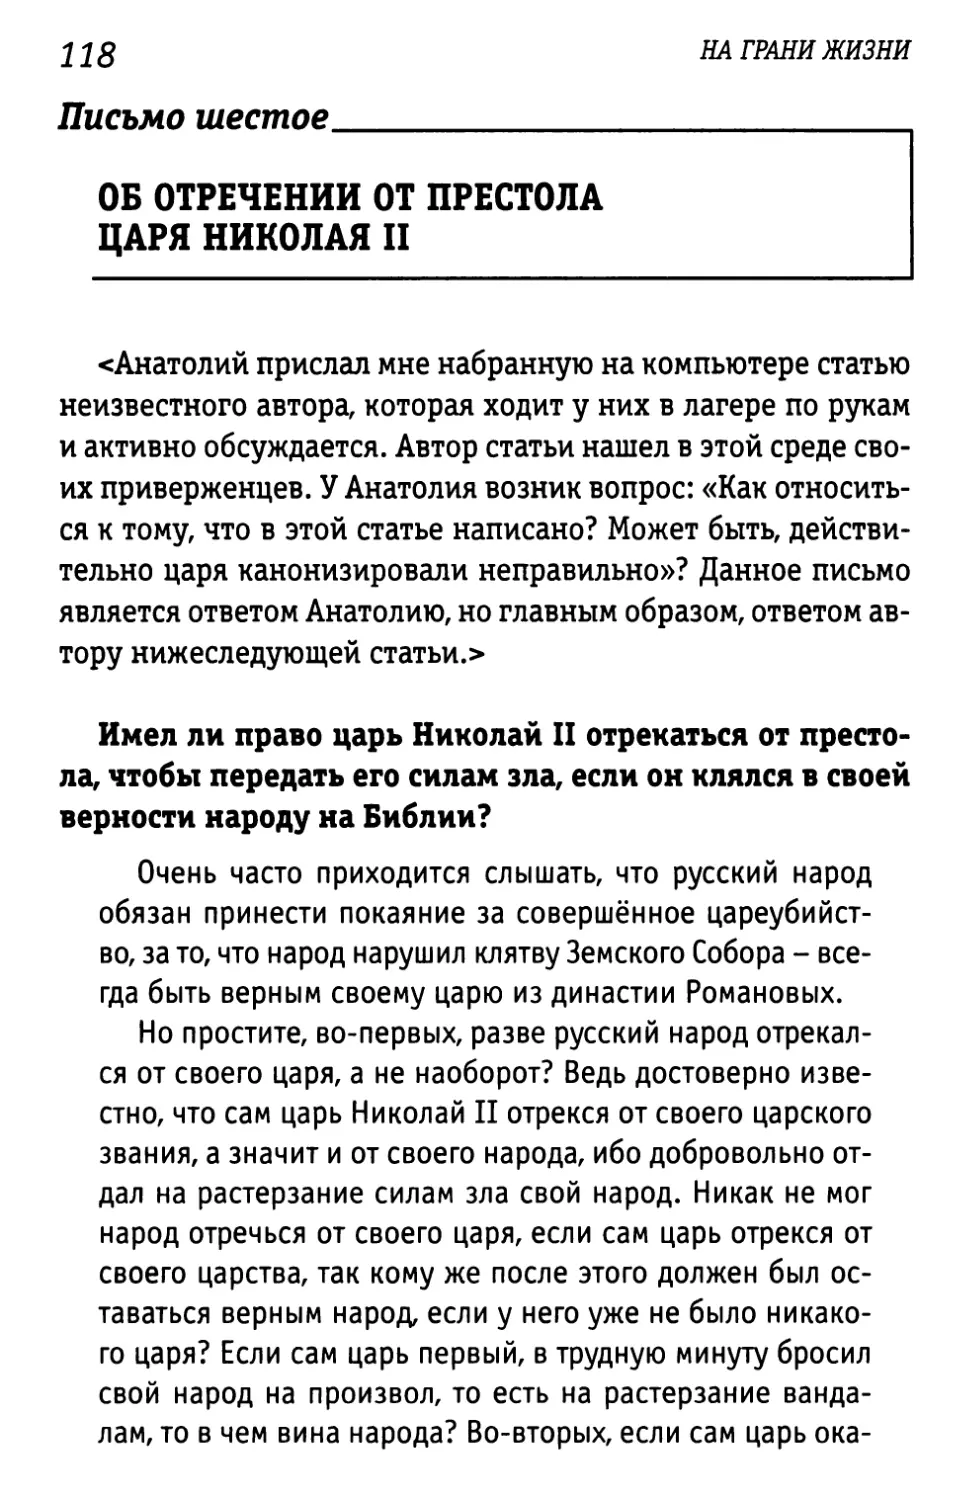 Письмо шестое. Об отречении от престола царя Николая II